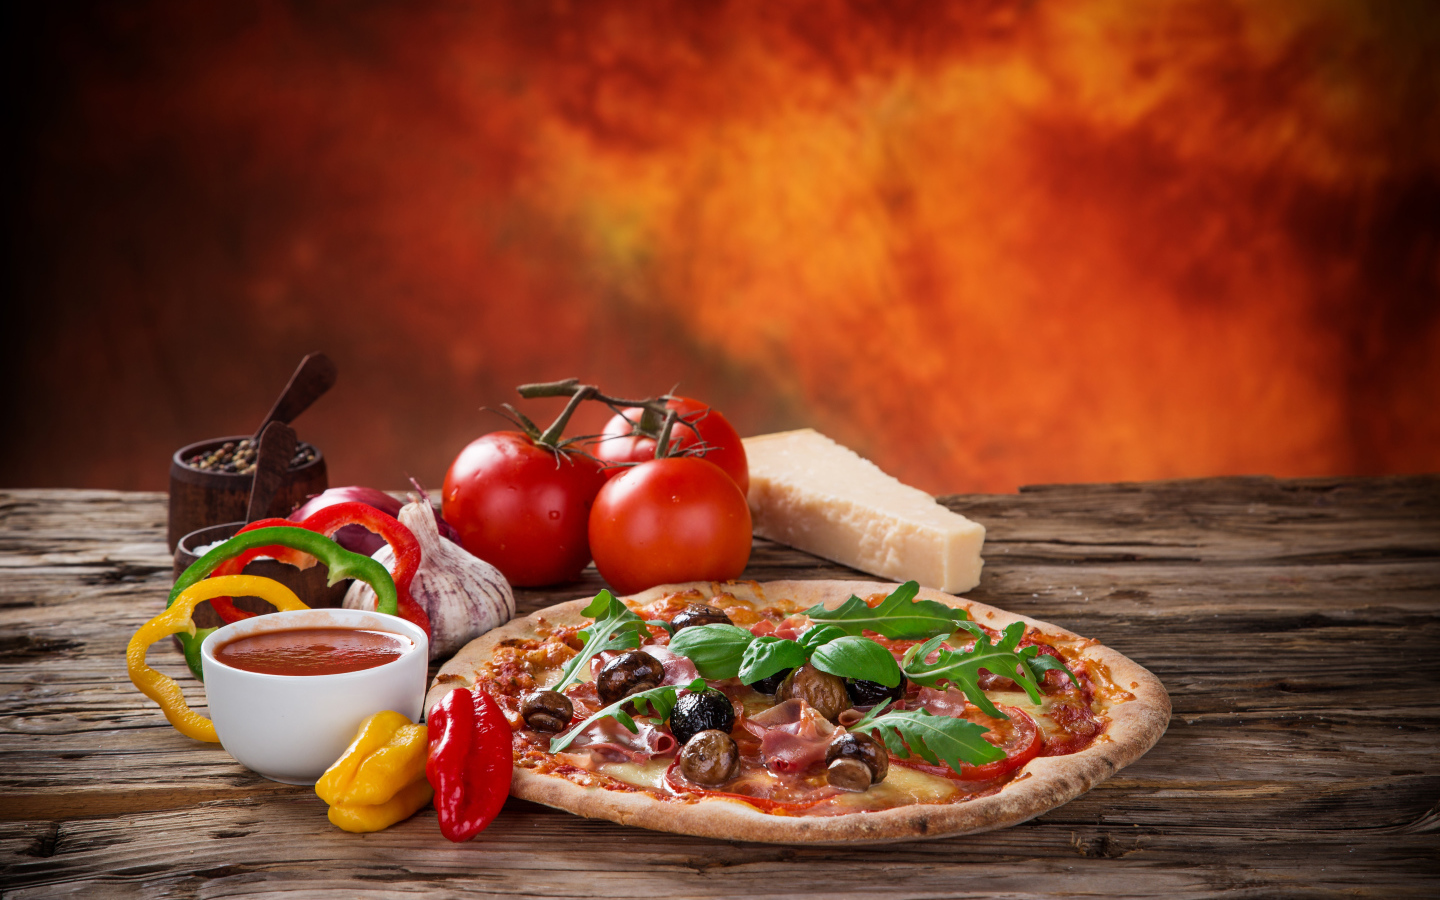 Пицца с колбасой и грибами на столе с соусом и овощами 